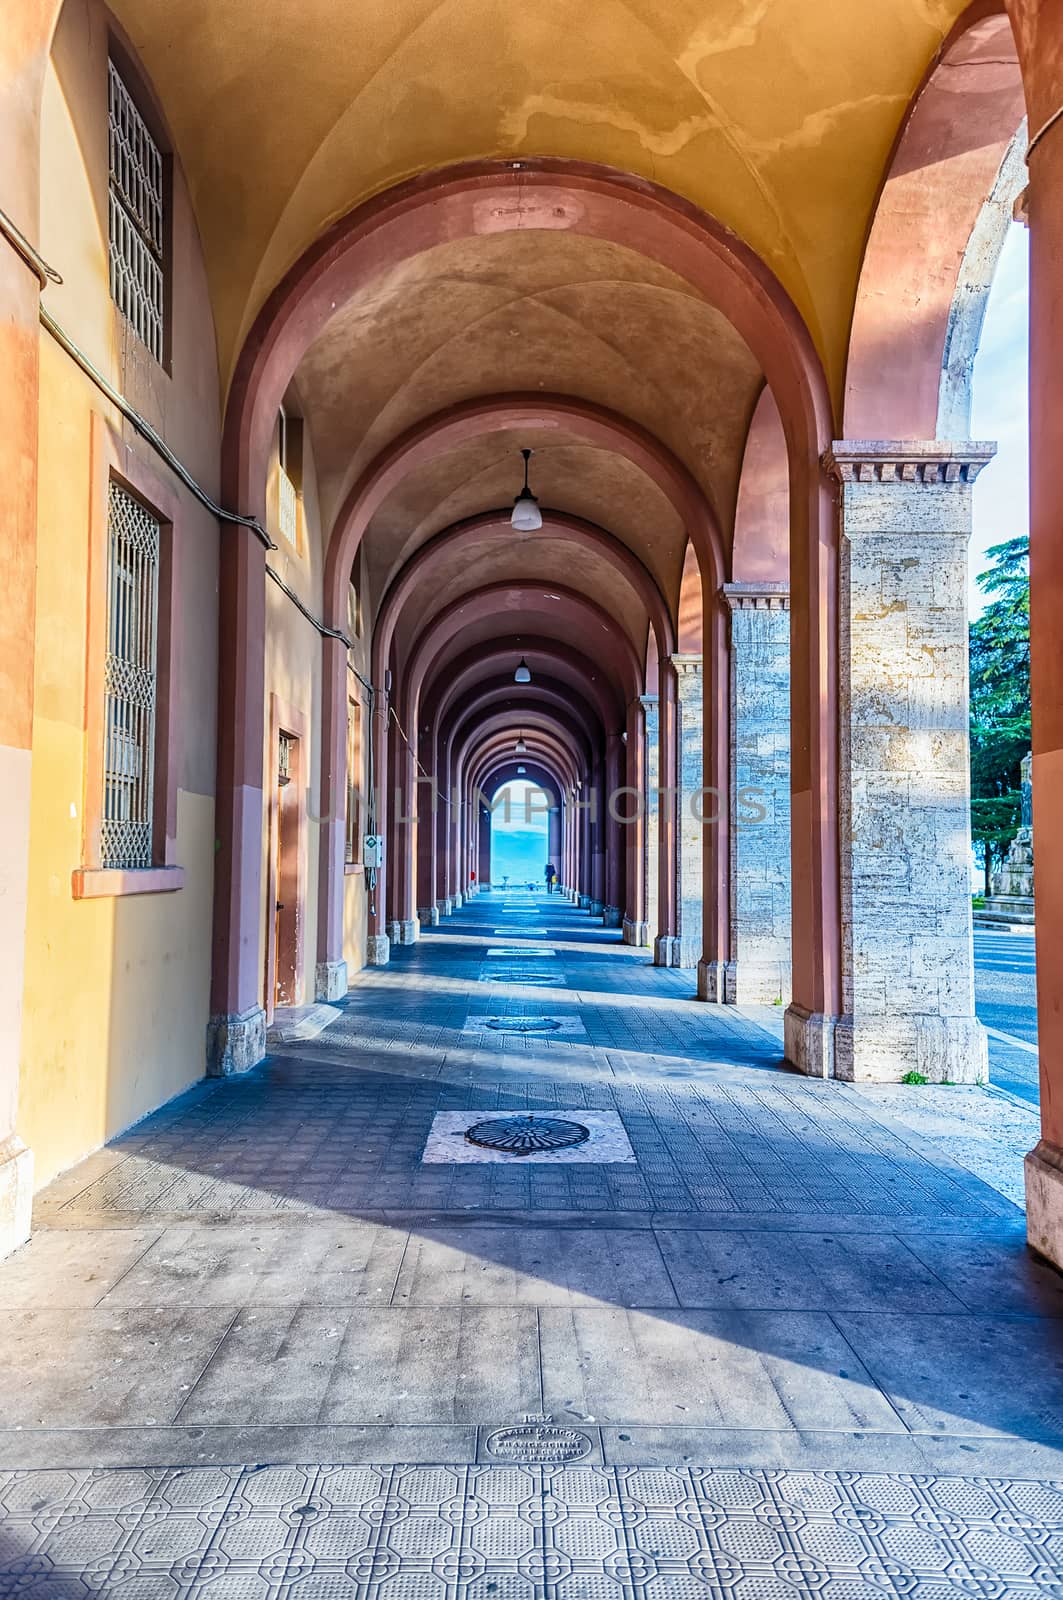 Scenic portico in the city centre of Perugia, Italy by marcorubino